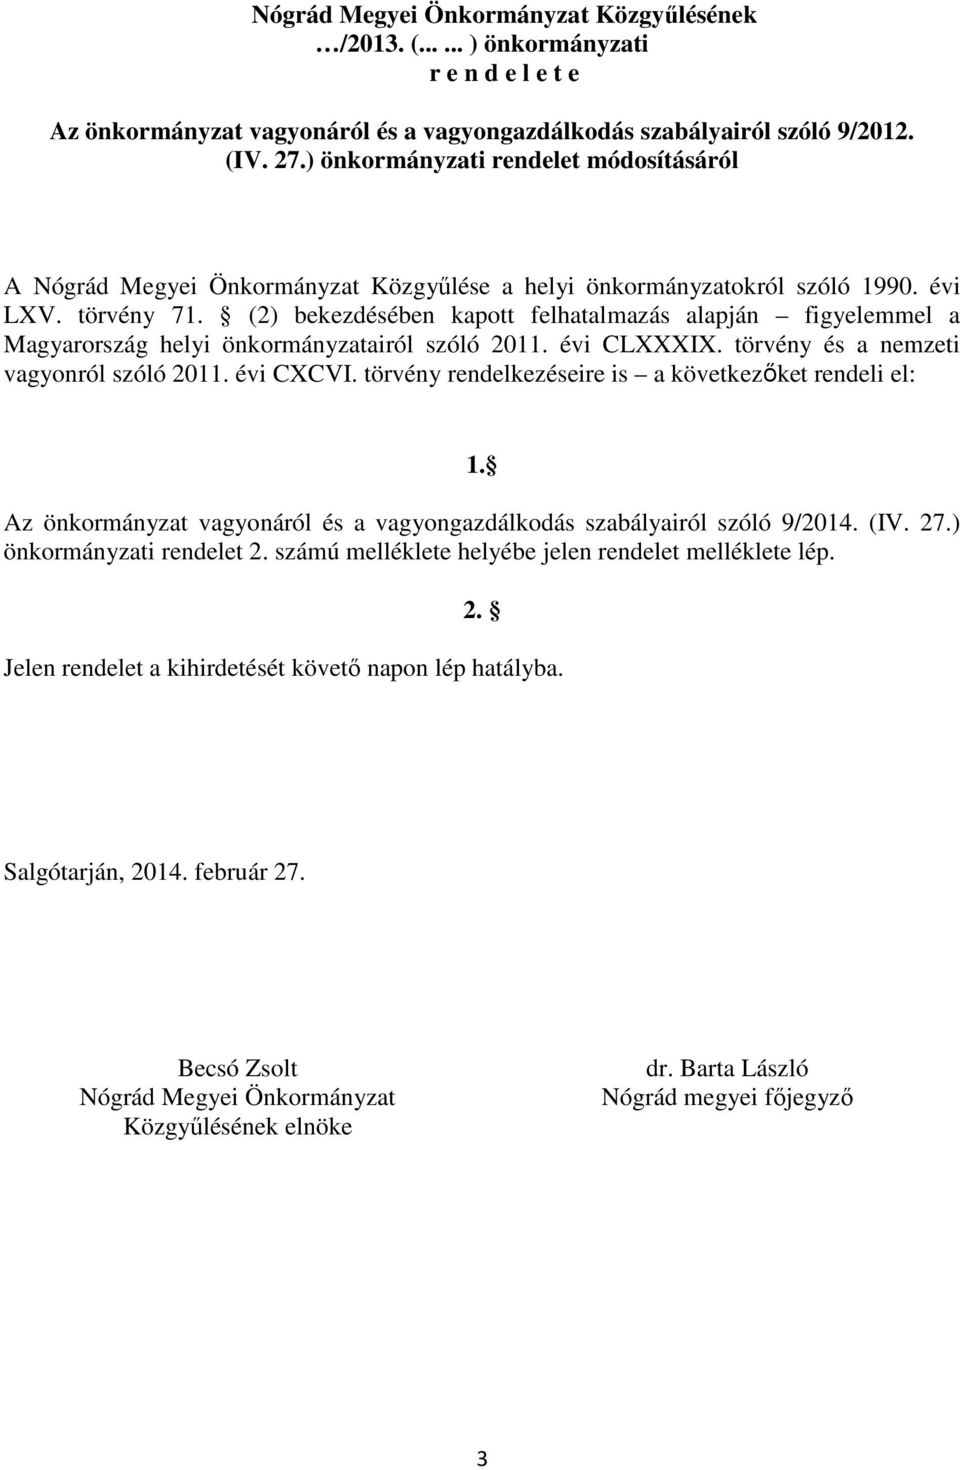 (2) bekezdésében kapott felhatalmazás alapján figyelemmel a Magyarország helyi önkormányzatairól szóló 2011. évi CLXXXIX. törvény és a nemzeti vagyonról szóló 2011. évi CXCVI.